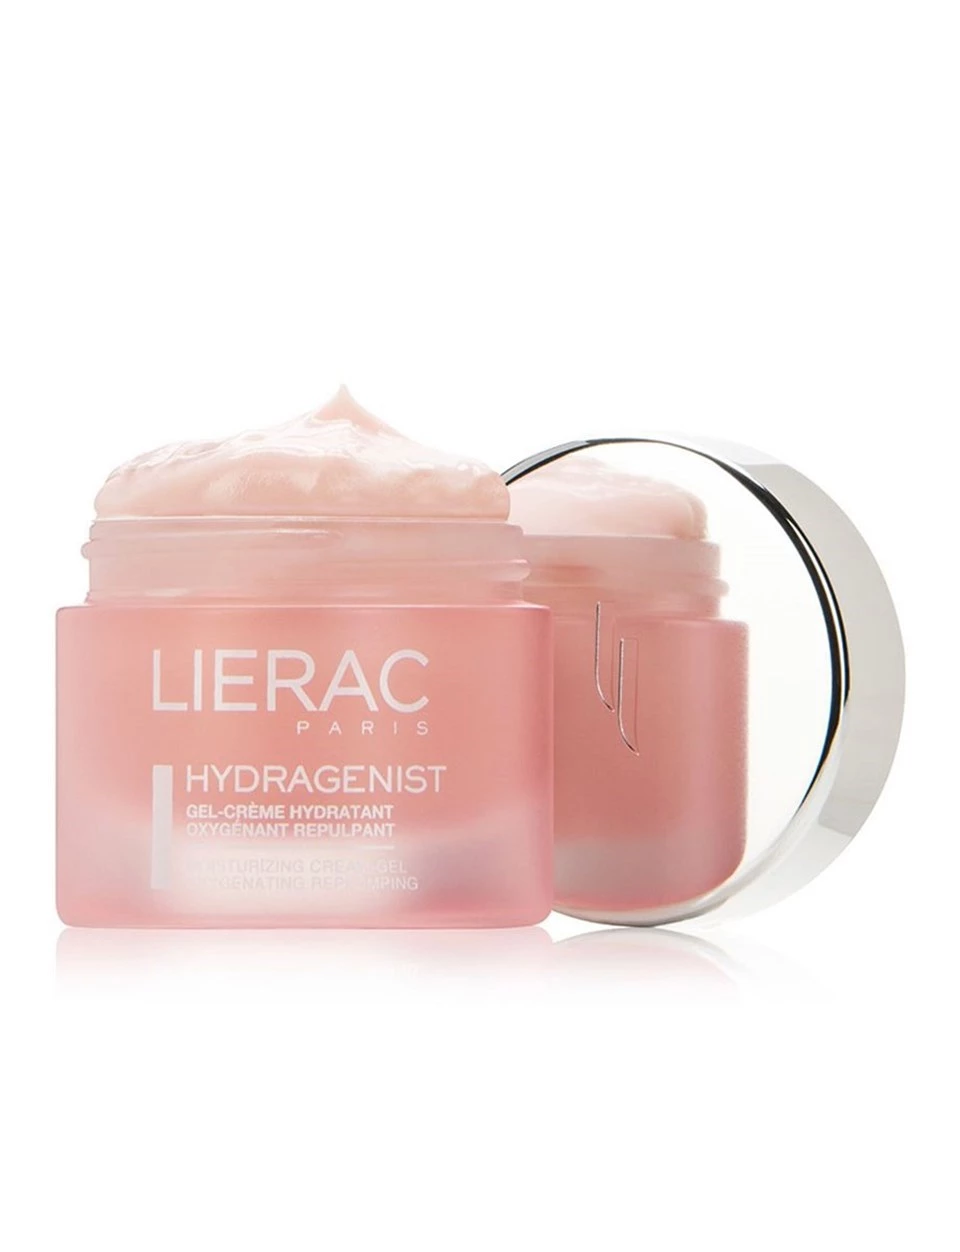 Lierac Hydragenist Moisturizing Cream 50ml